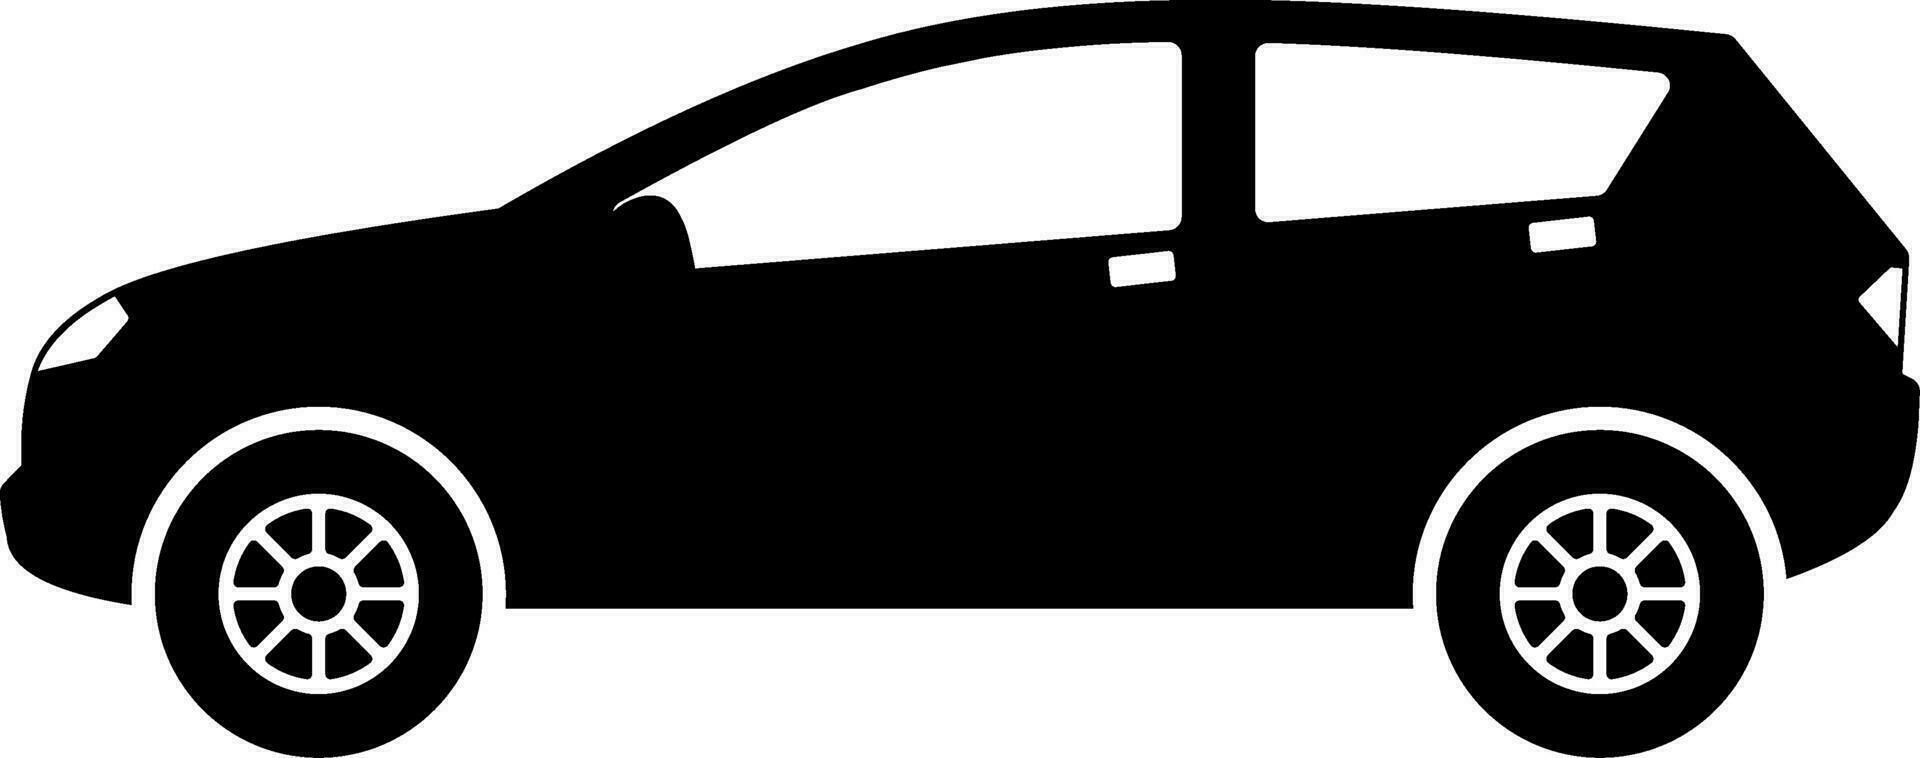 halvkombi bil ikon vektor. crossover bil silhuett för ikon, symbol eller tecken. halvkombi bil grafisk resurs för transport eller bil- vektor